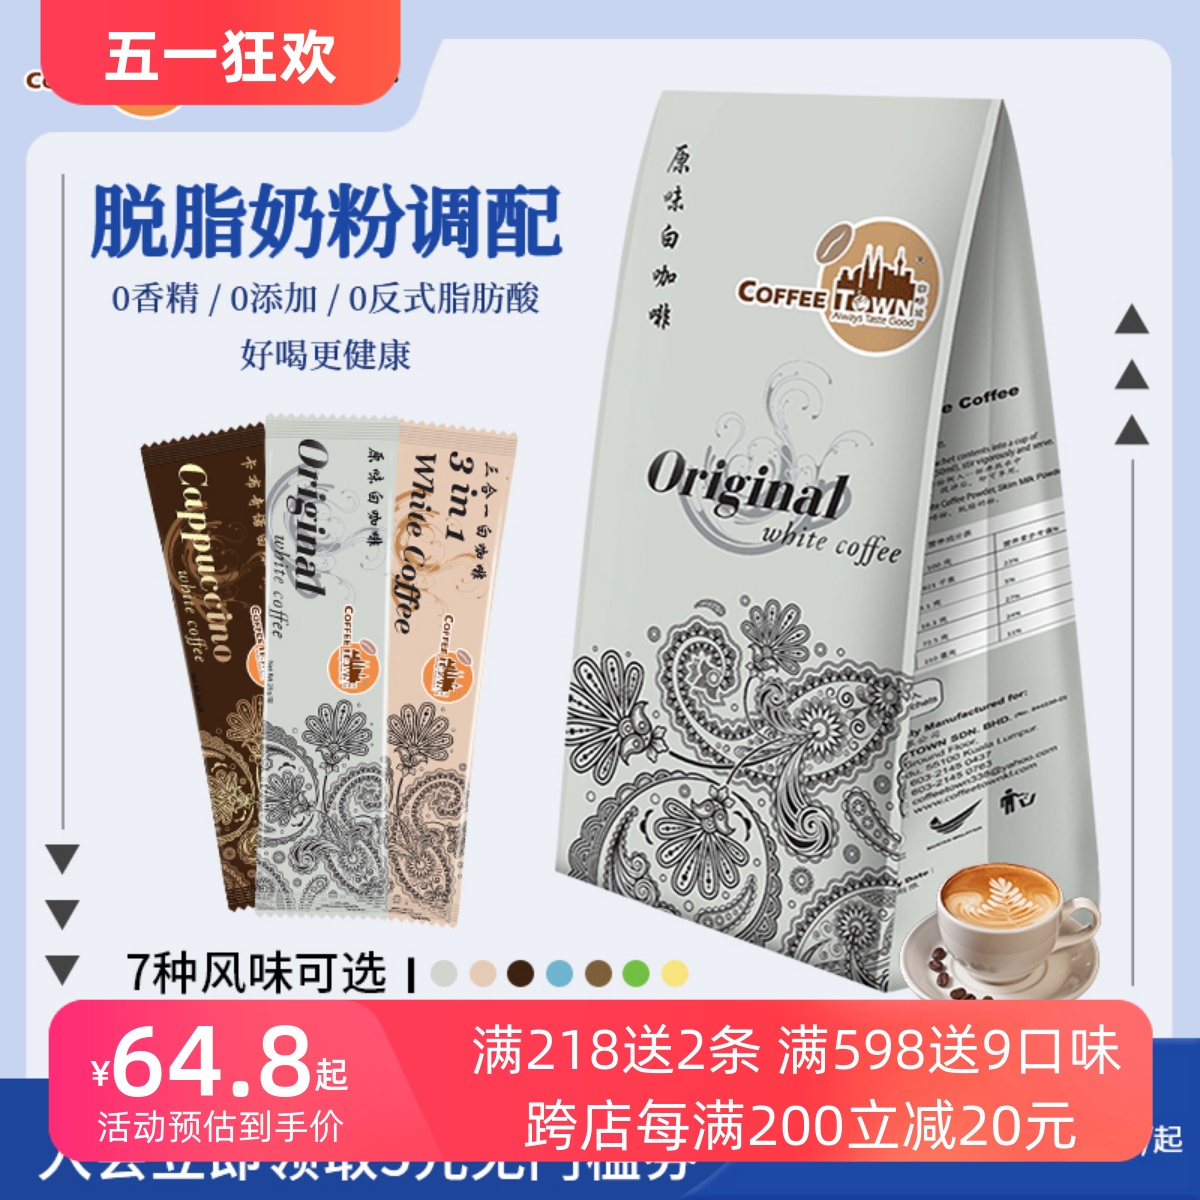 咖啡城马来西亚原装进口原味卡布奇诺白咖啡脱脂奶粉特浓即溶组合